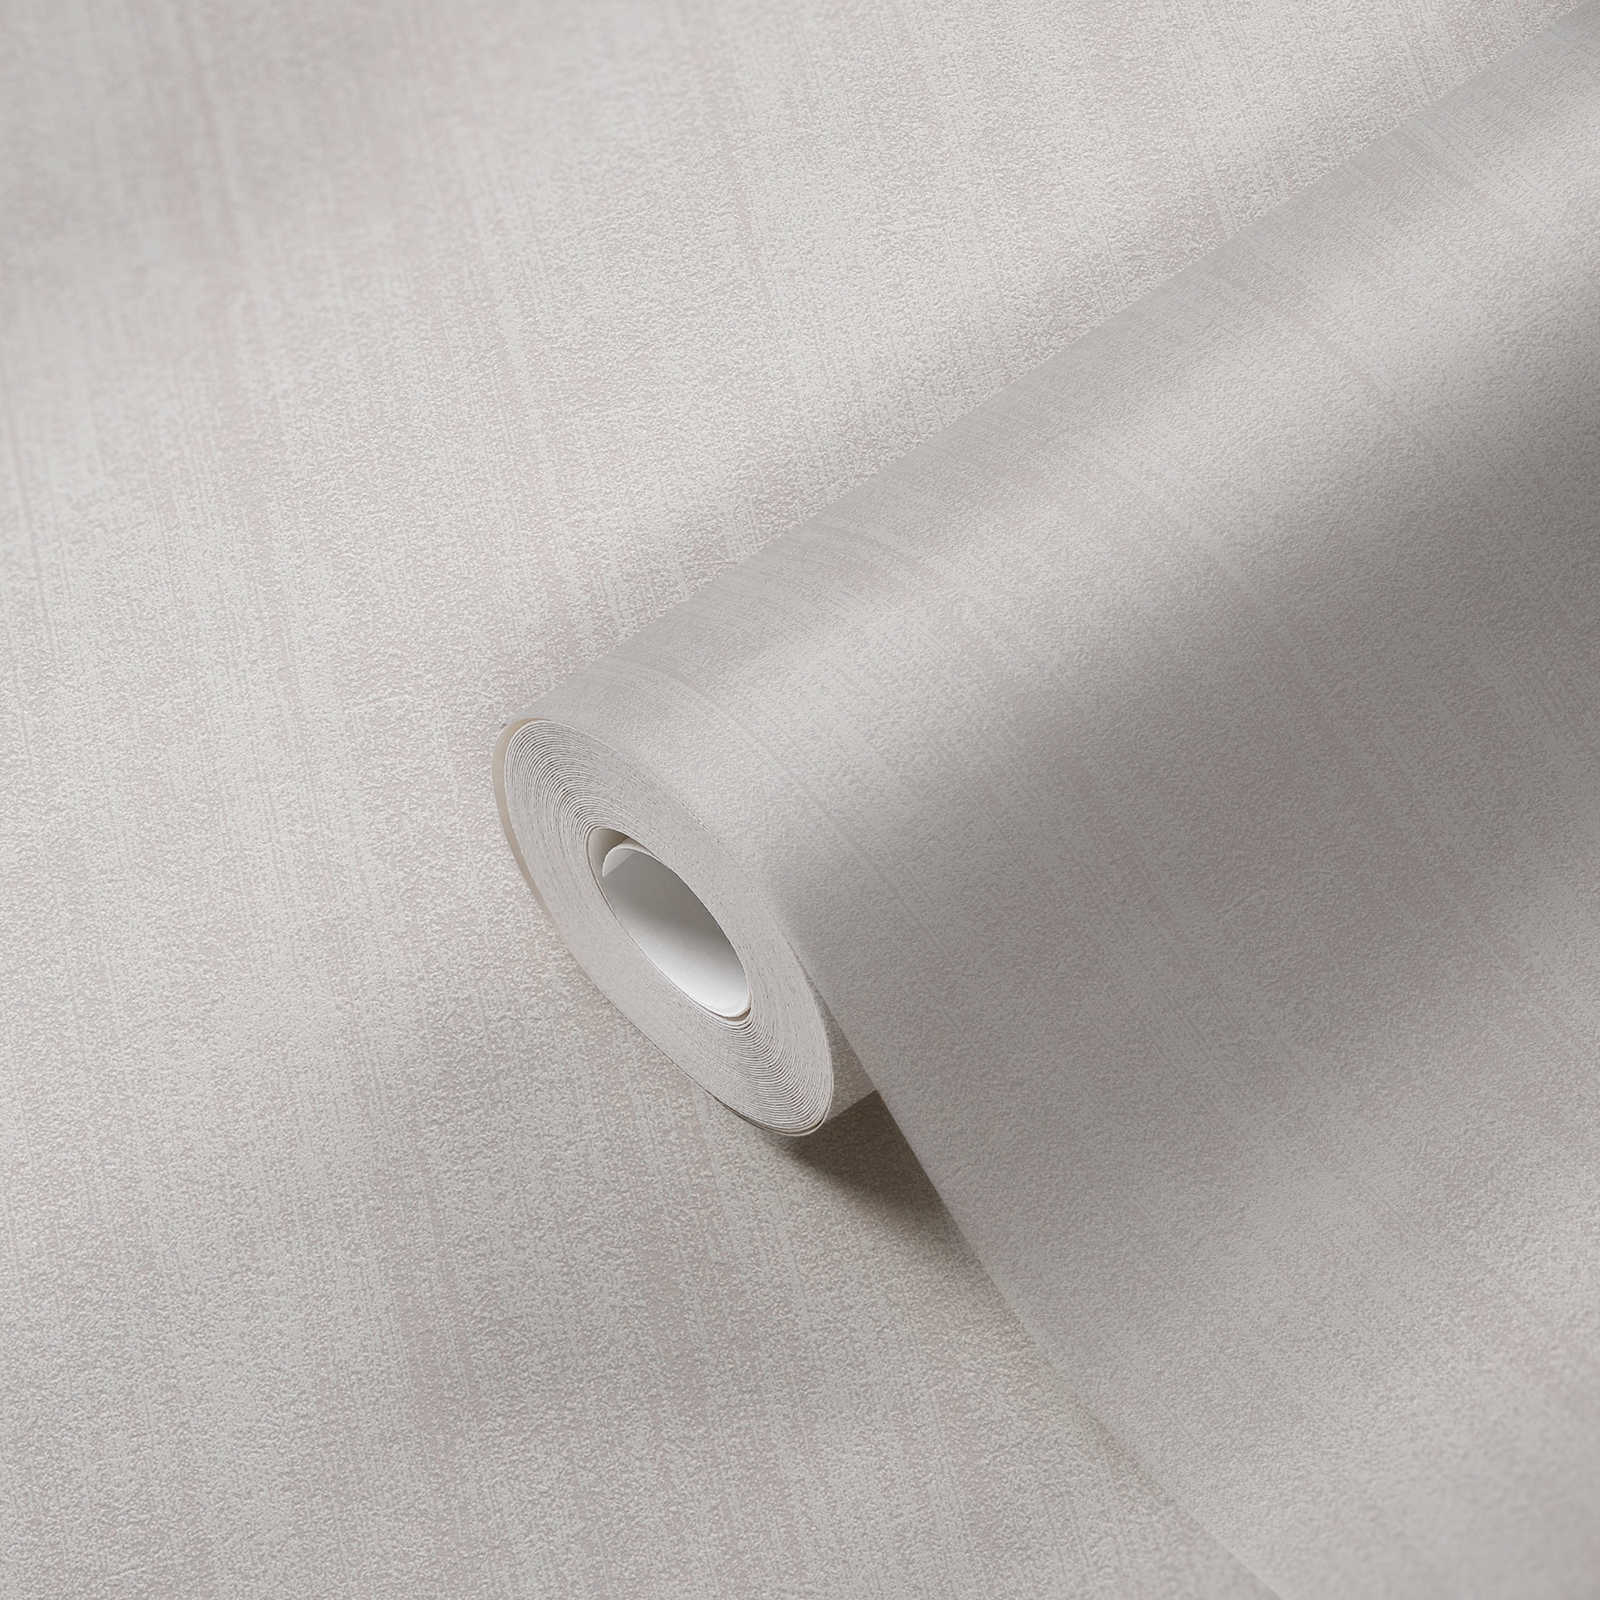             Hatched plain wallpaper with subtle texture - beige
        